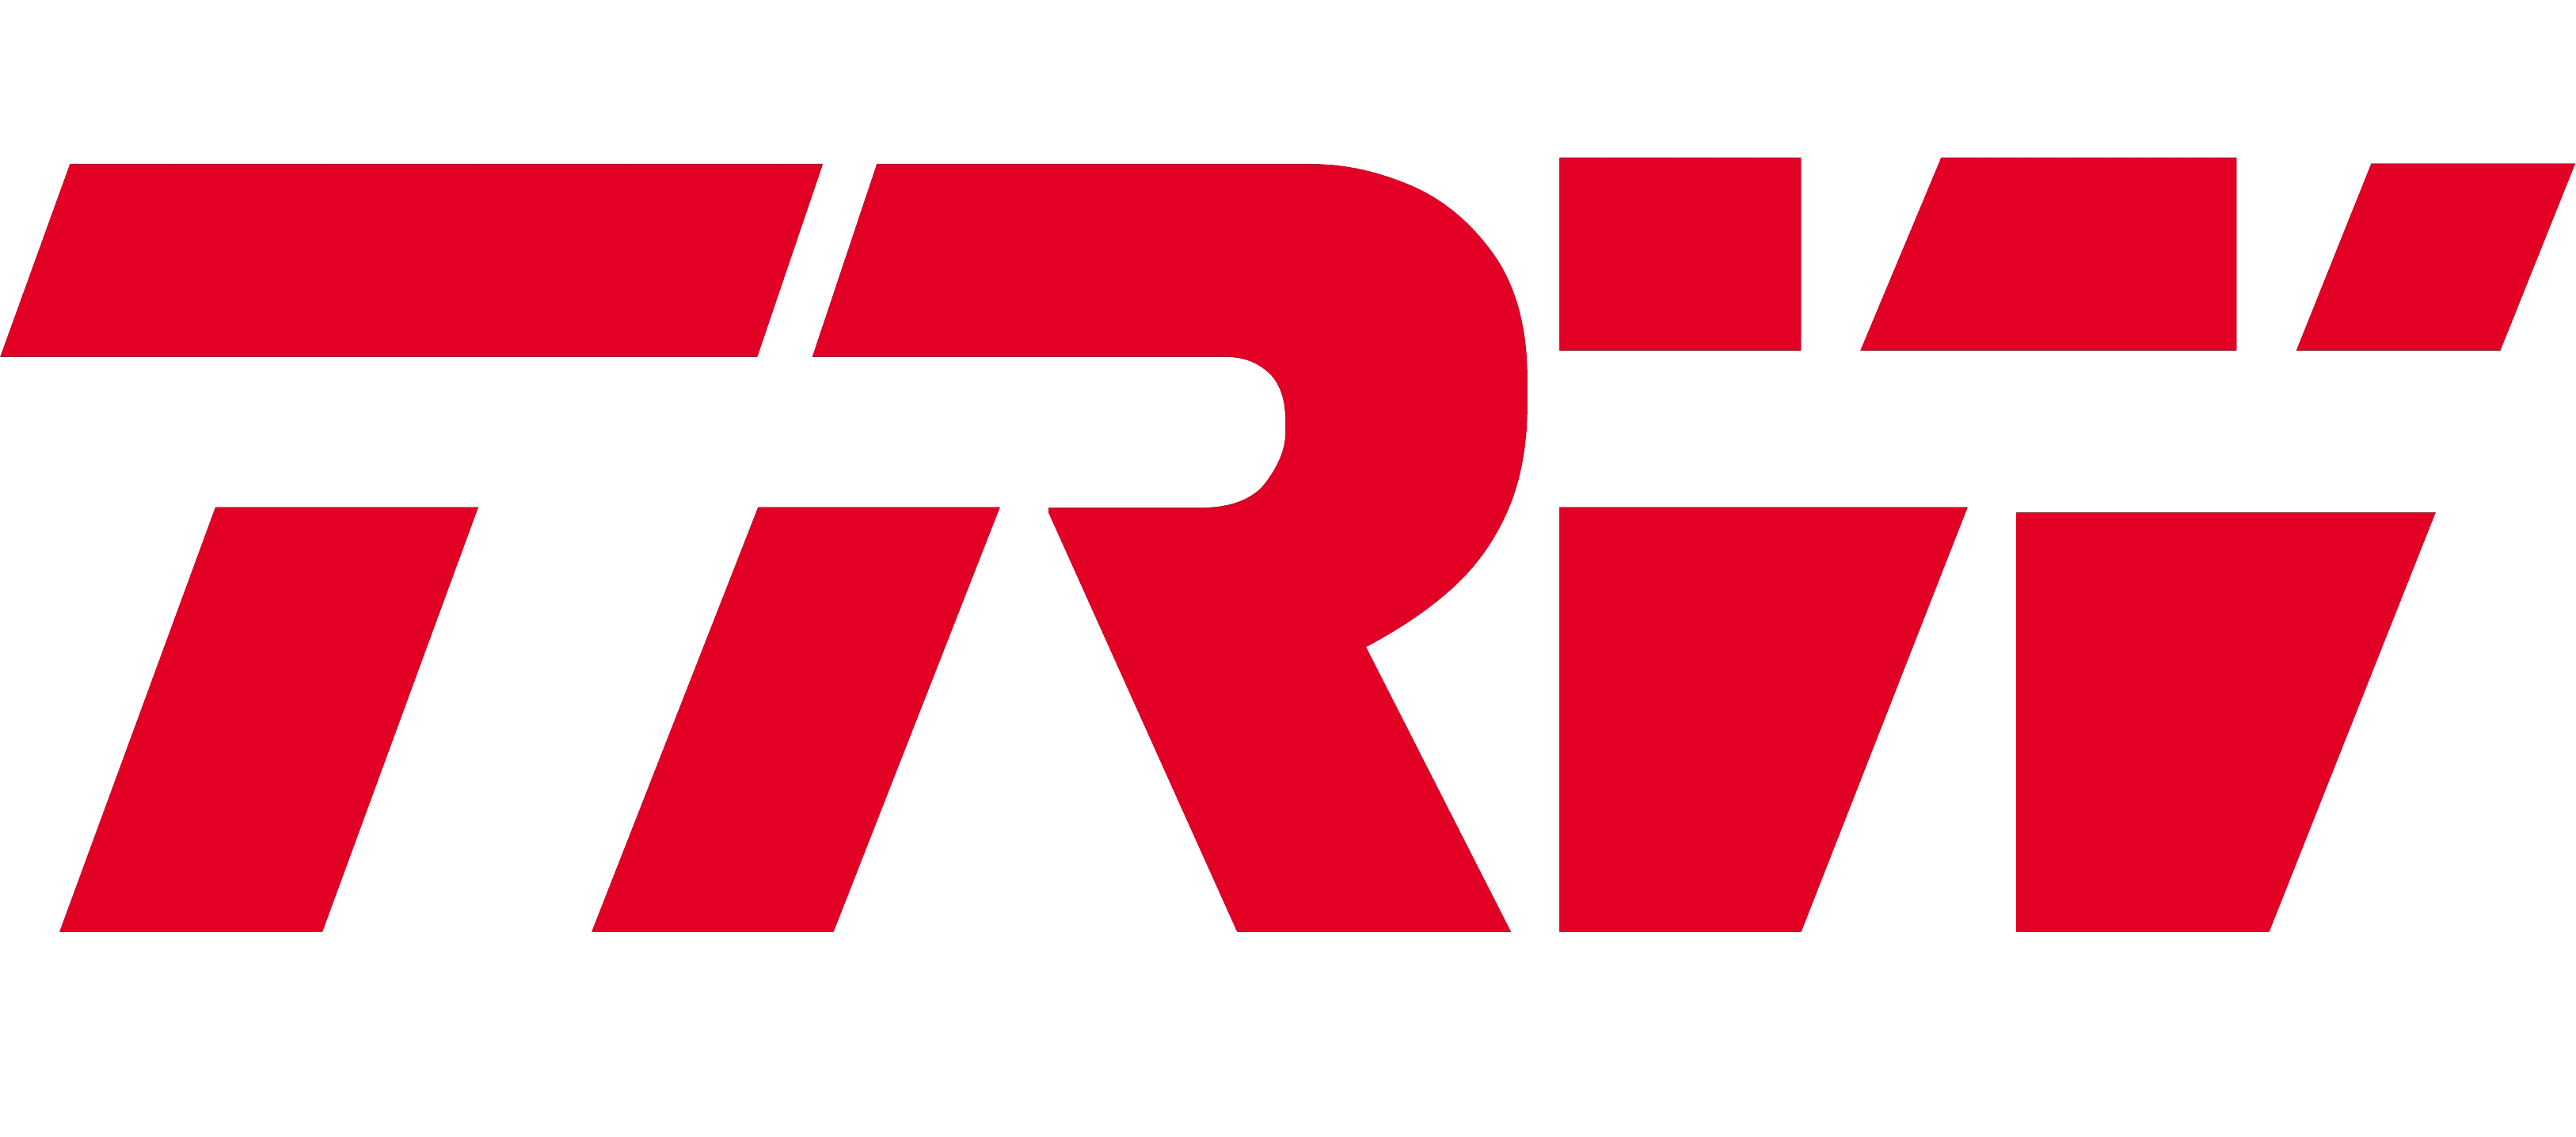 TRW logo 2 